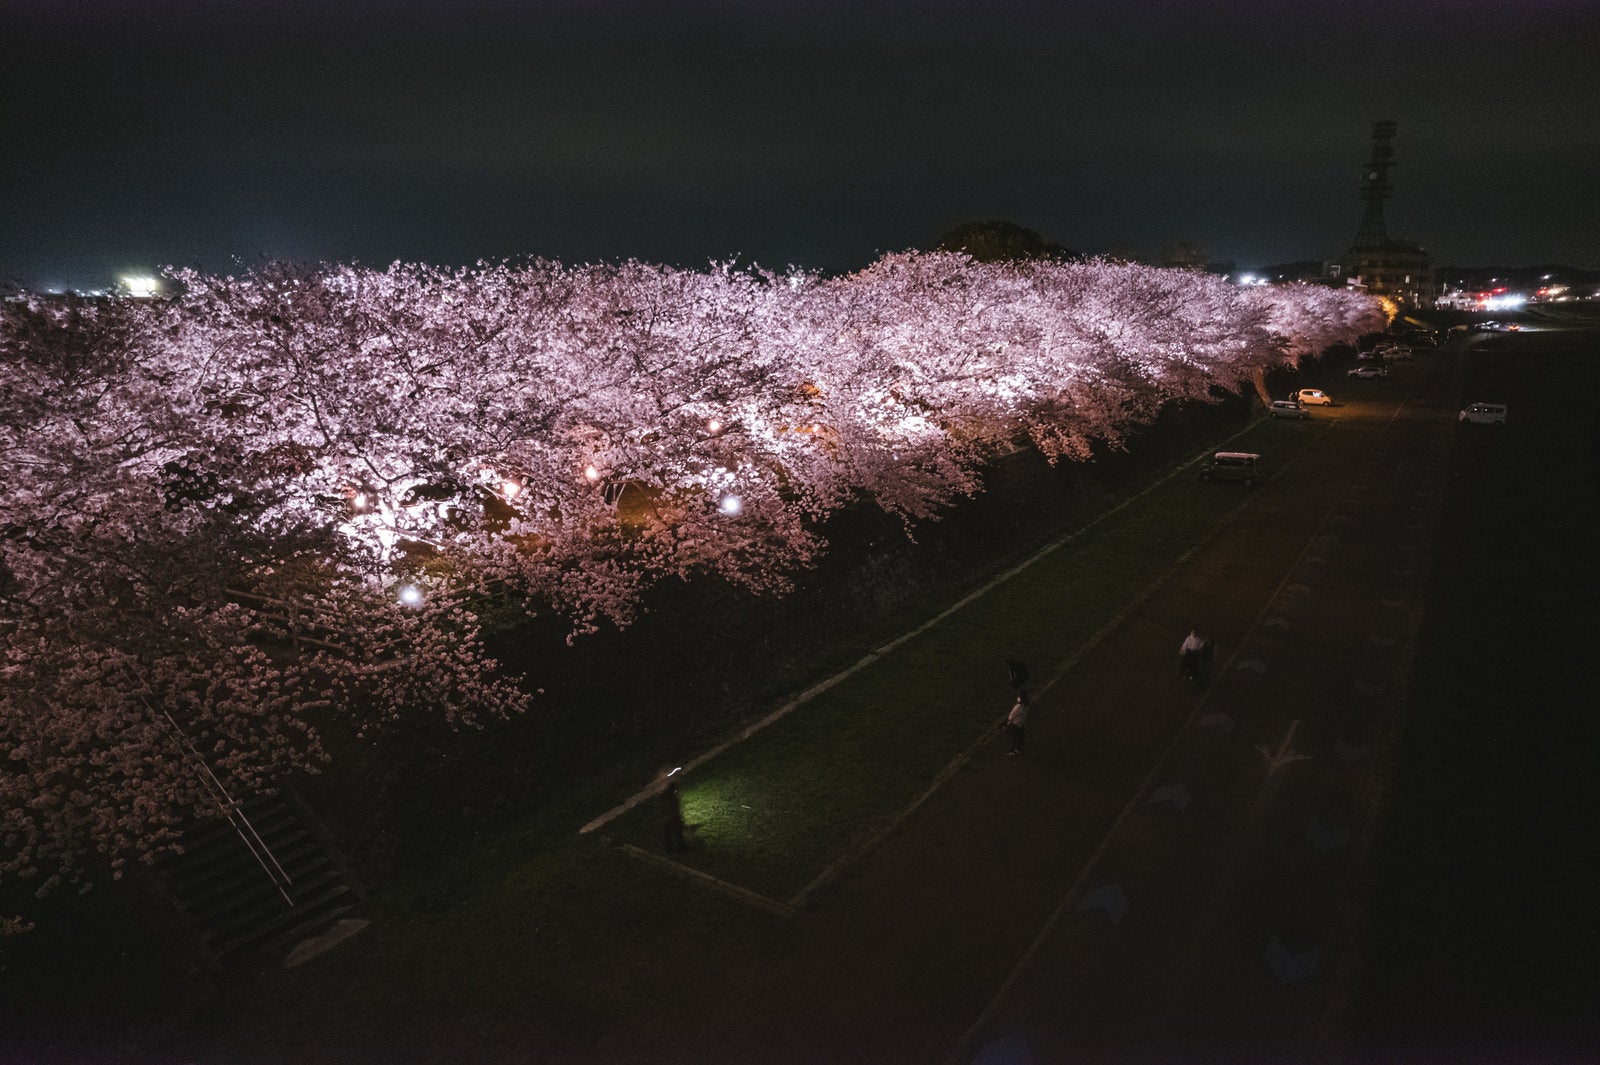 「直方中ノ島の桜並木ライトアップ」の写真